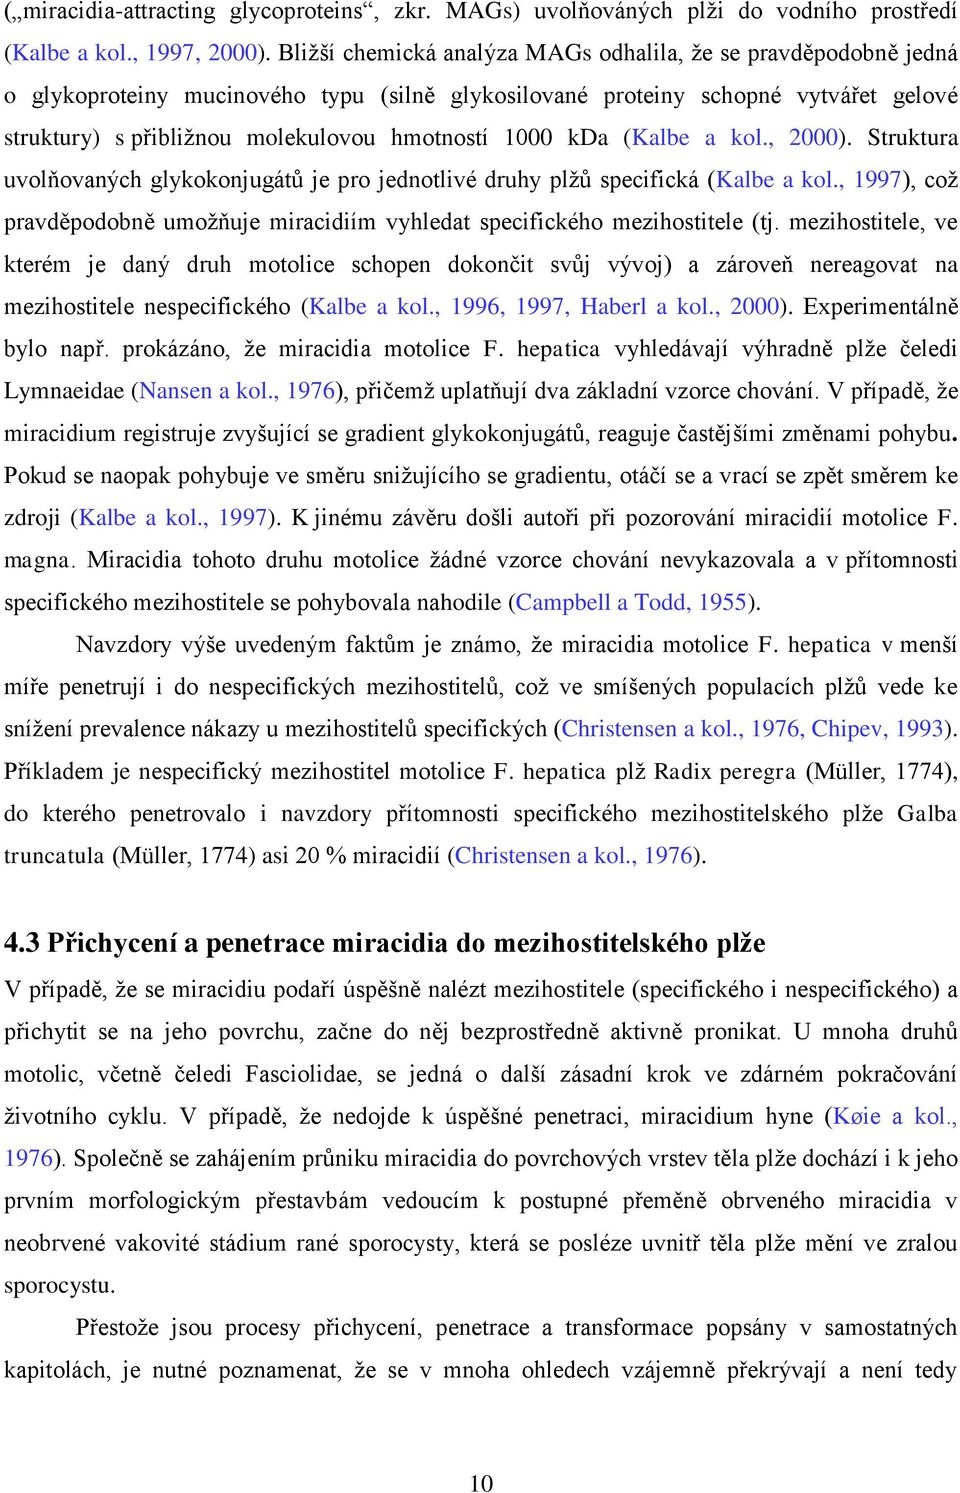 1000 kda (Kalbe a kol., 2000). Struktura uvolňovaných glykokonjugátů je pro jednotlivé druhy plţů specifická (Kalbe a kol.